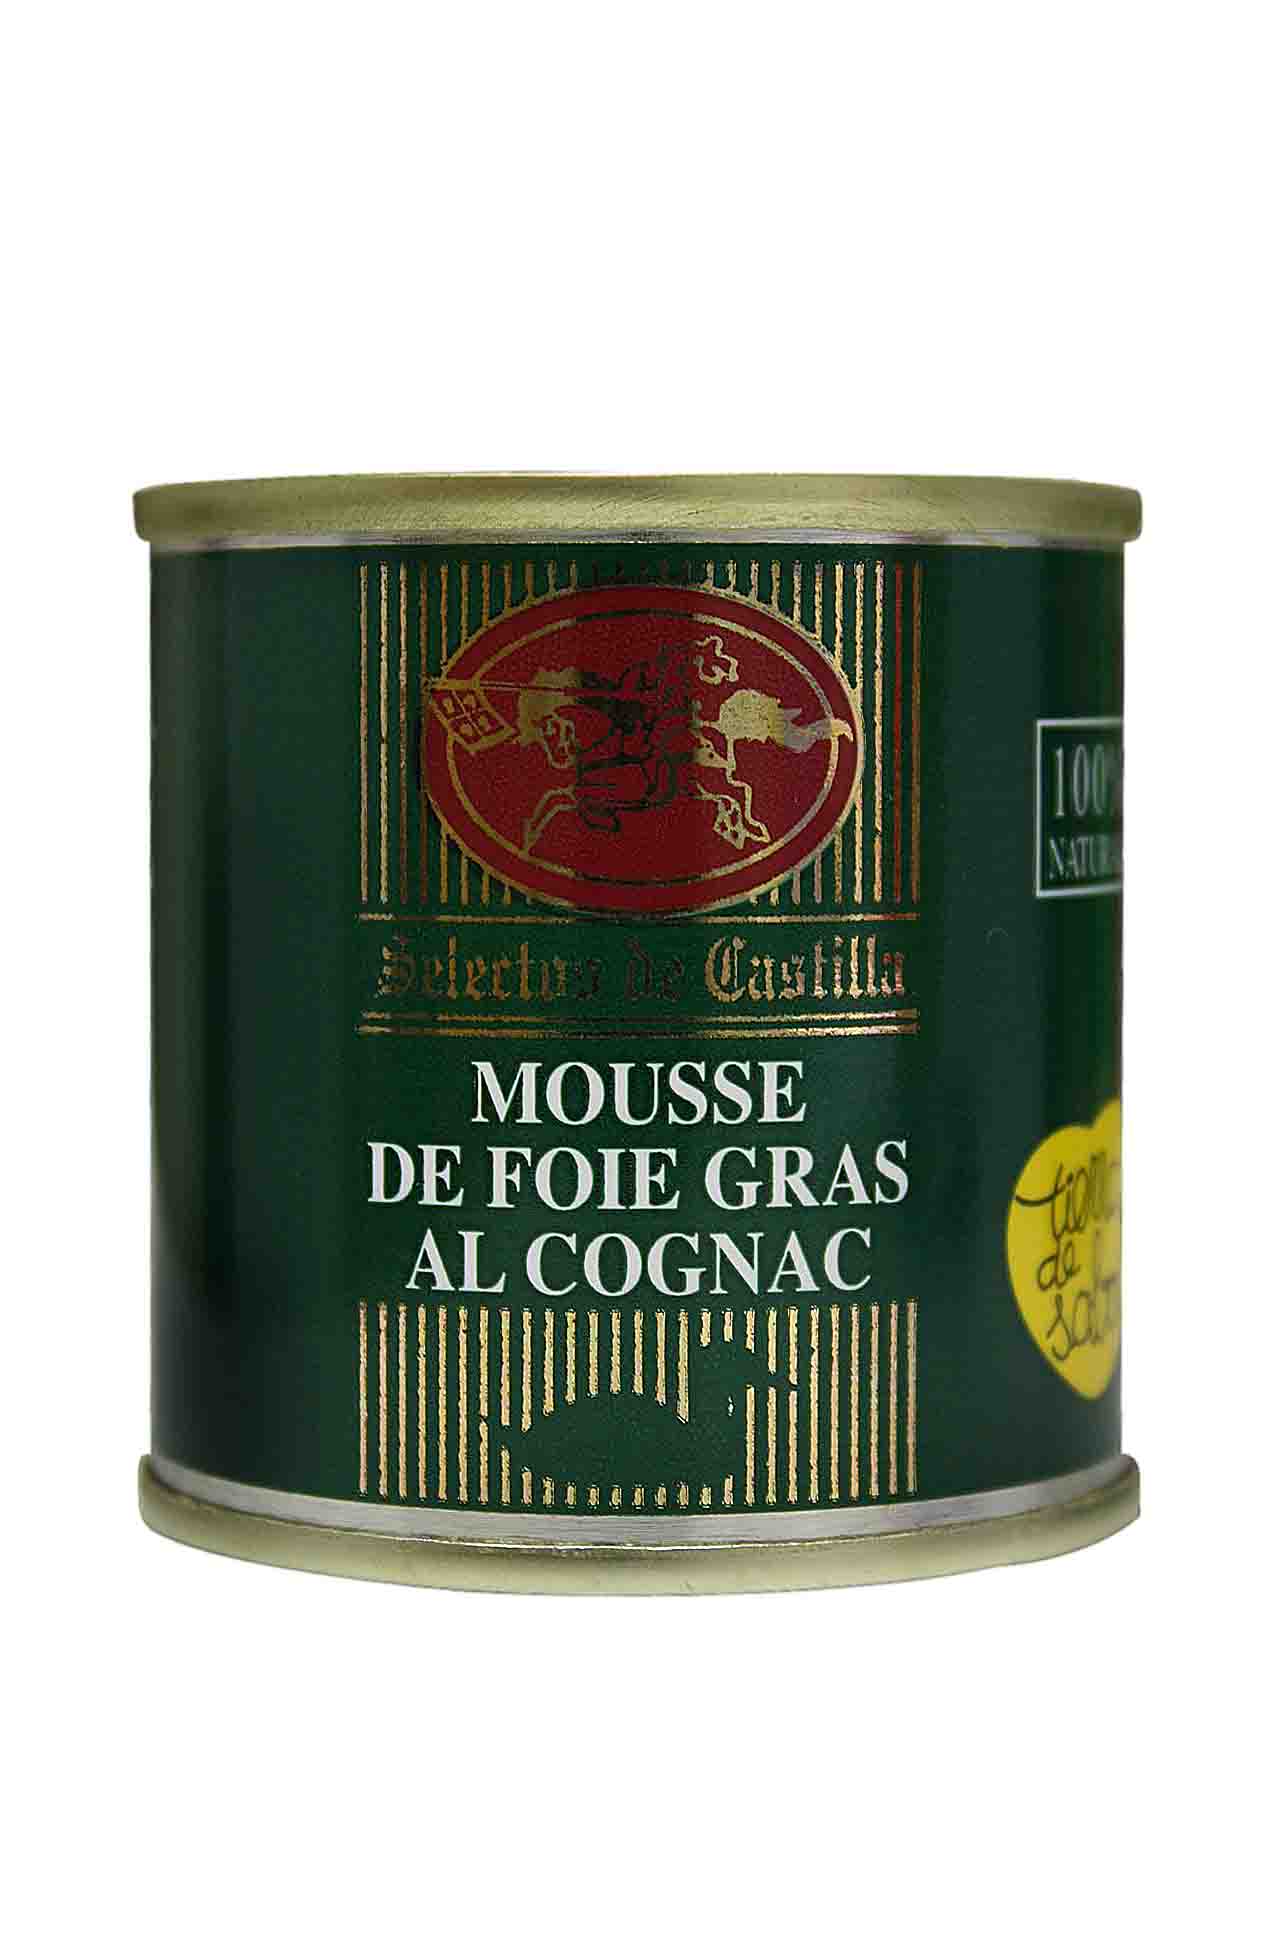 Mousse foie grass con coñac